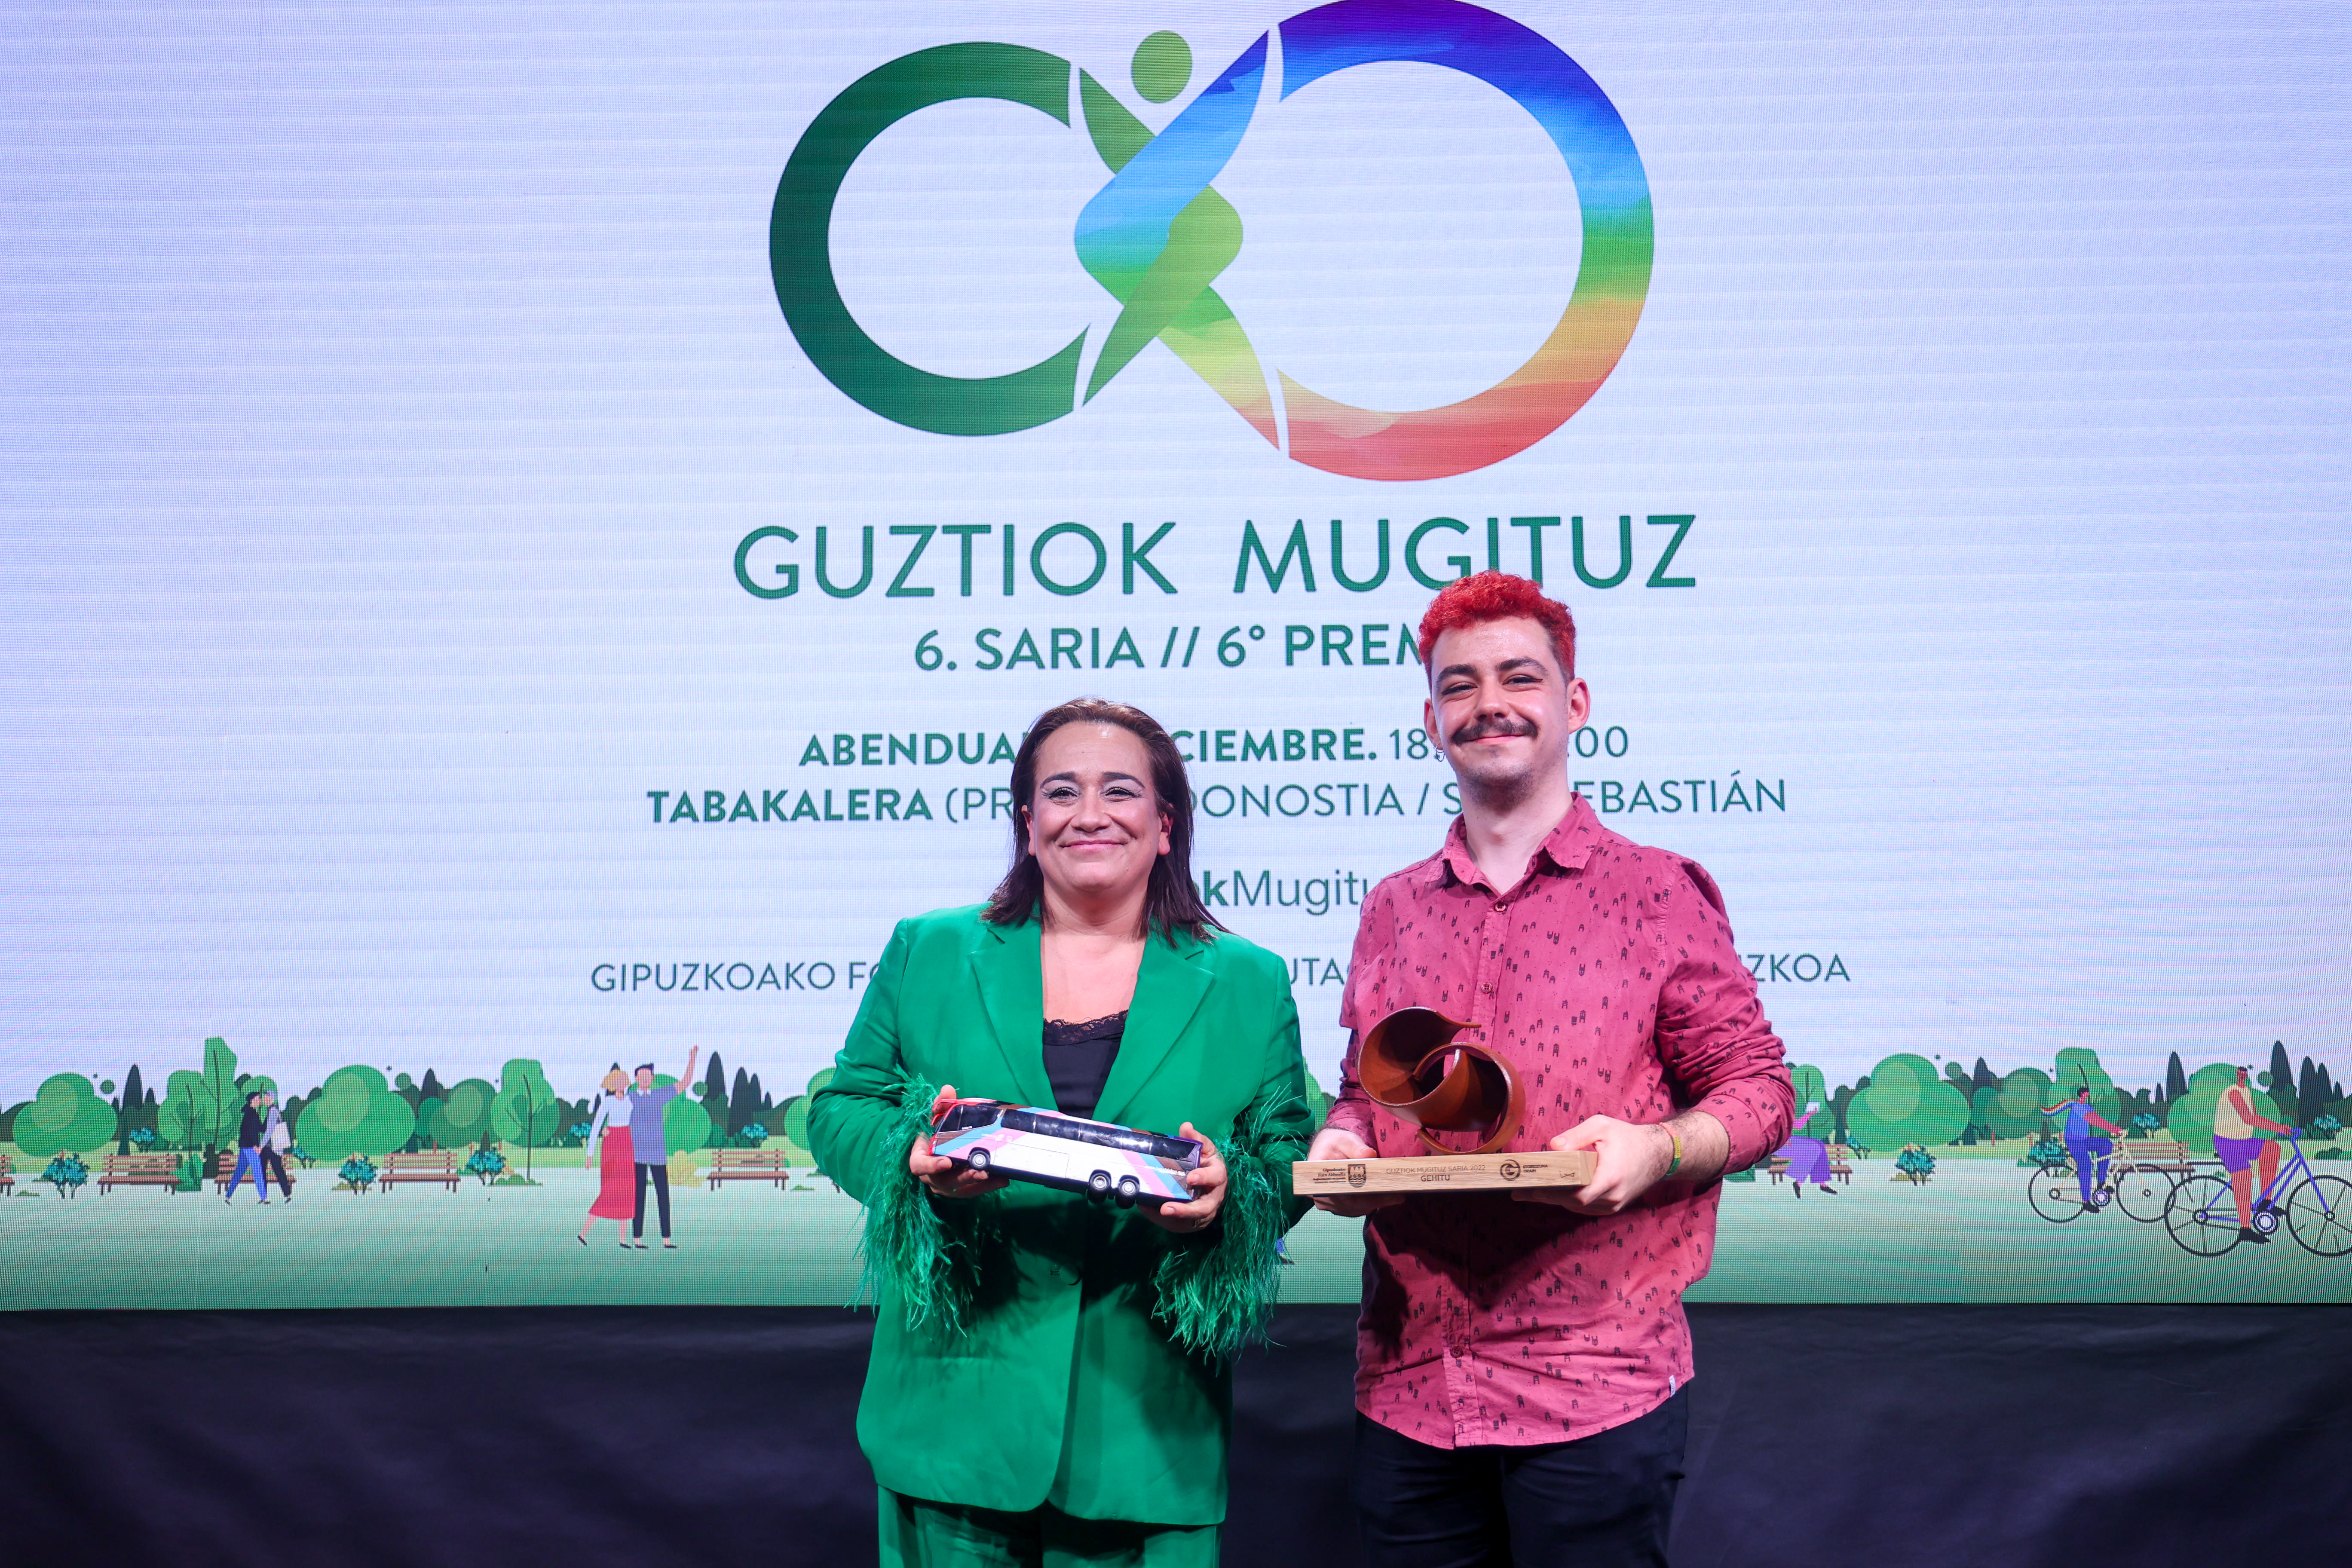 Movilidad reconoce con el premio Guztiok Mugituz los 25 años de activismo de GEHITU en defensa de los derechos LGTBI+...